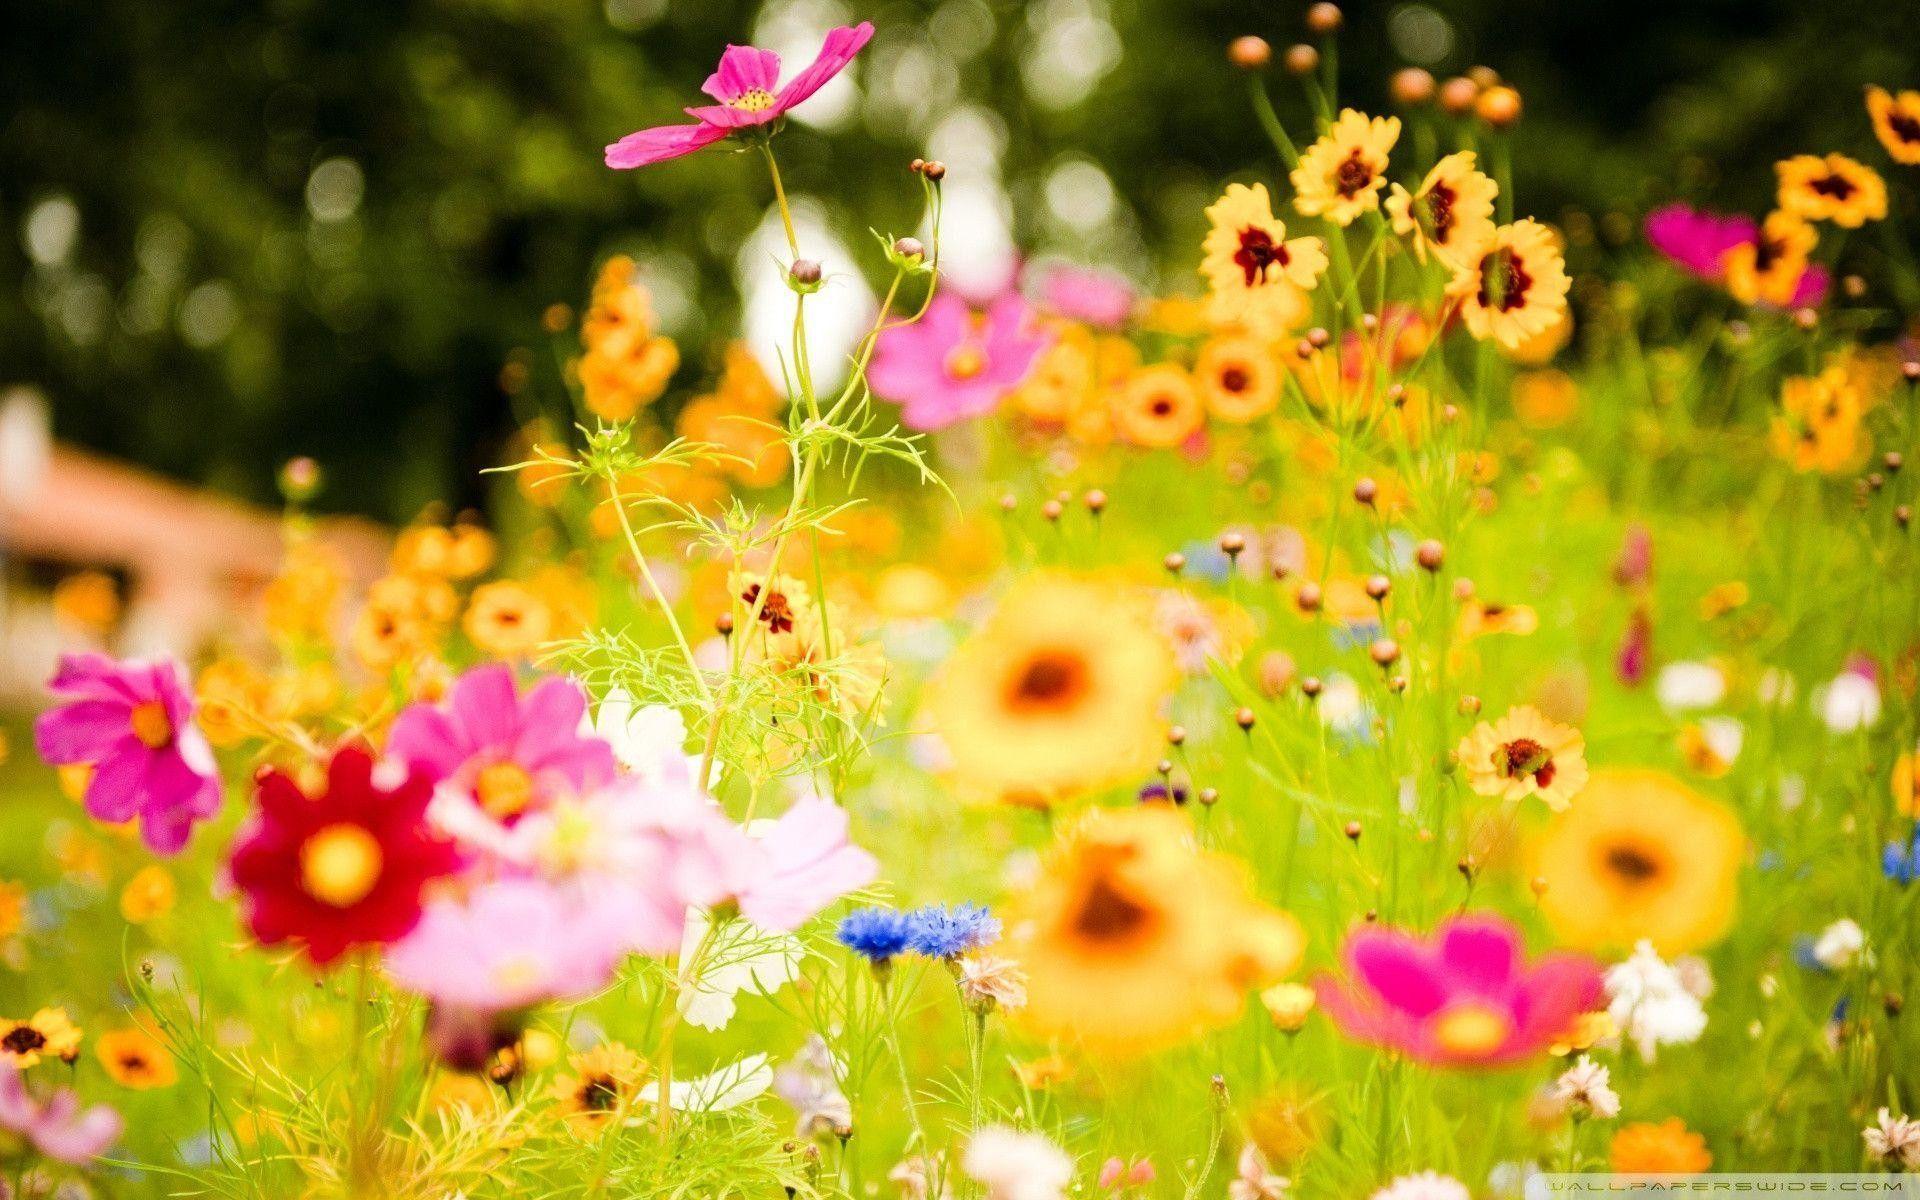 Hình nền desktop hoa mùa hè sẽ mang đến cho bạn một không gian tươi mới và thơm ngát. Với những hình ảnh hoa tươi sáng, bạn sẽ cảm thấy như đang bước vào một khu vườn đầy sắc màu. Hãy tải về ngay và cho không gian làm việc của mình thêm sinh động!